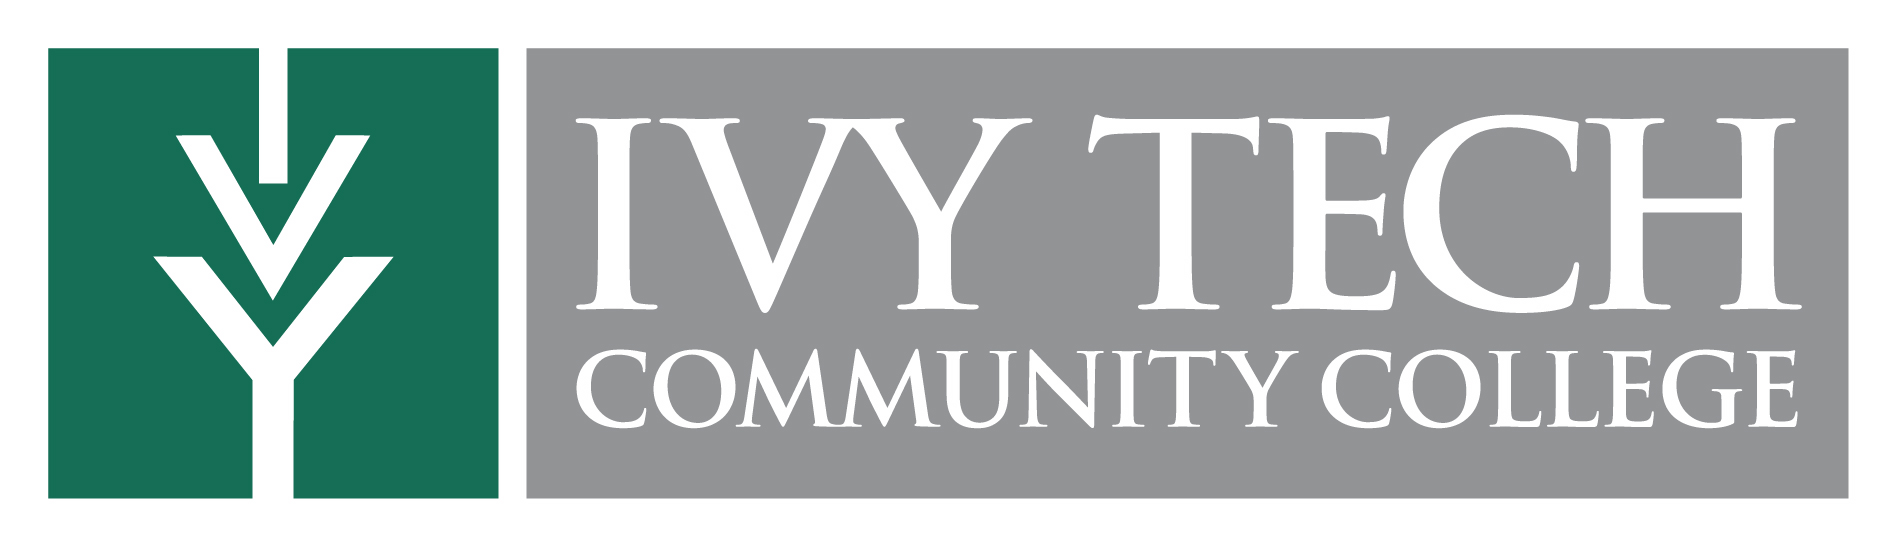 Ivy Tech Logo.jpg